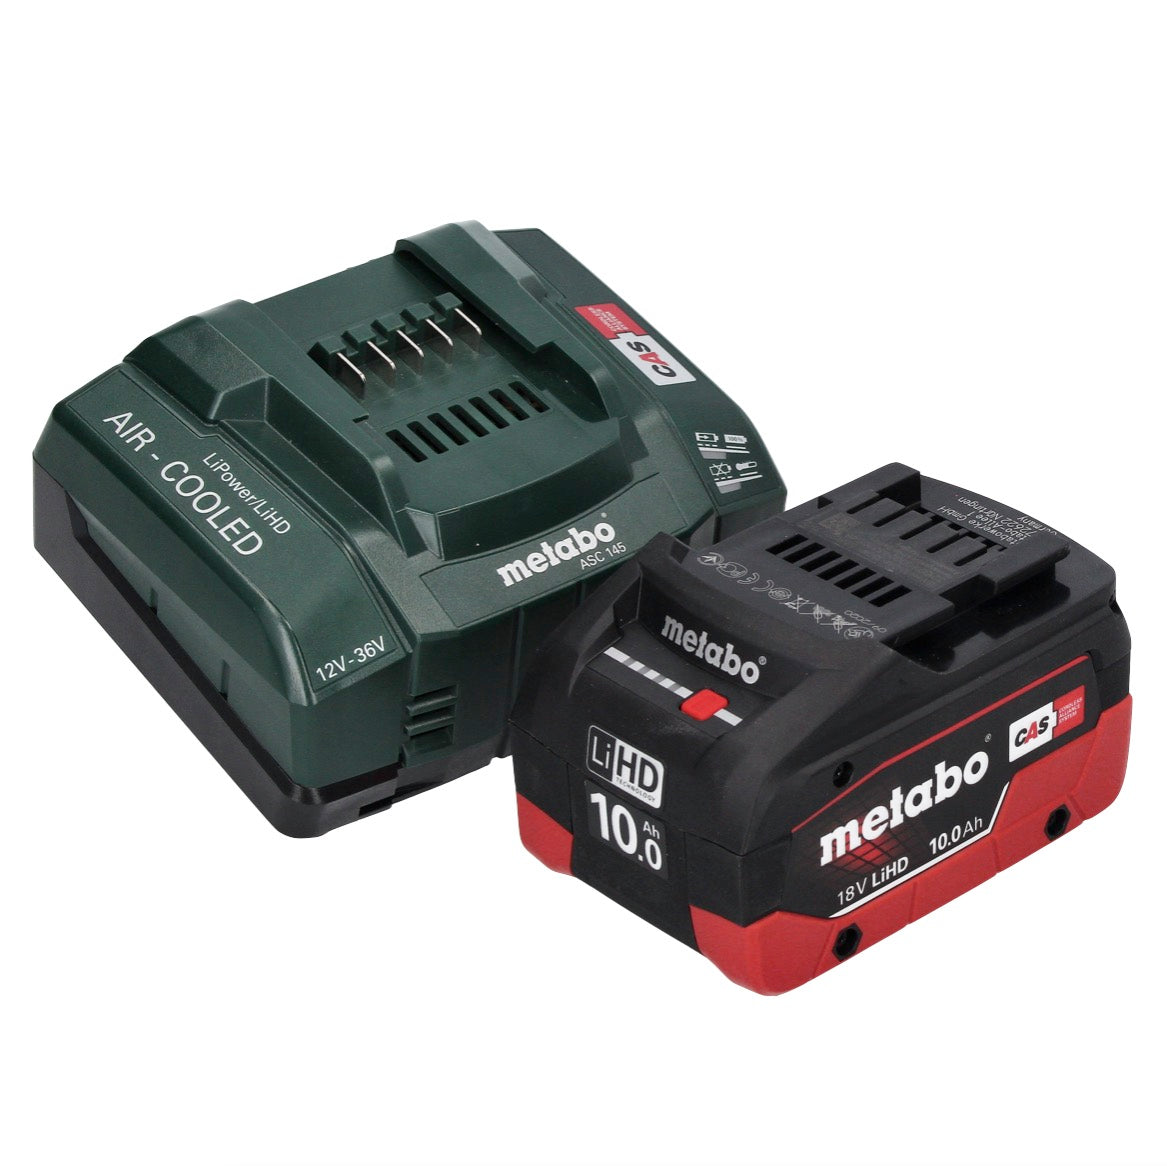 Radial de batería Metabo W 18 LT BL 11-125 (Equiv. a 1.100 watios) –  Suministros Cáceres